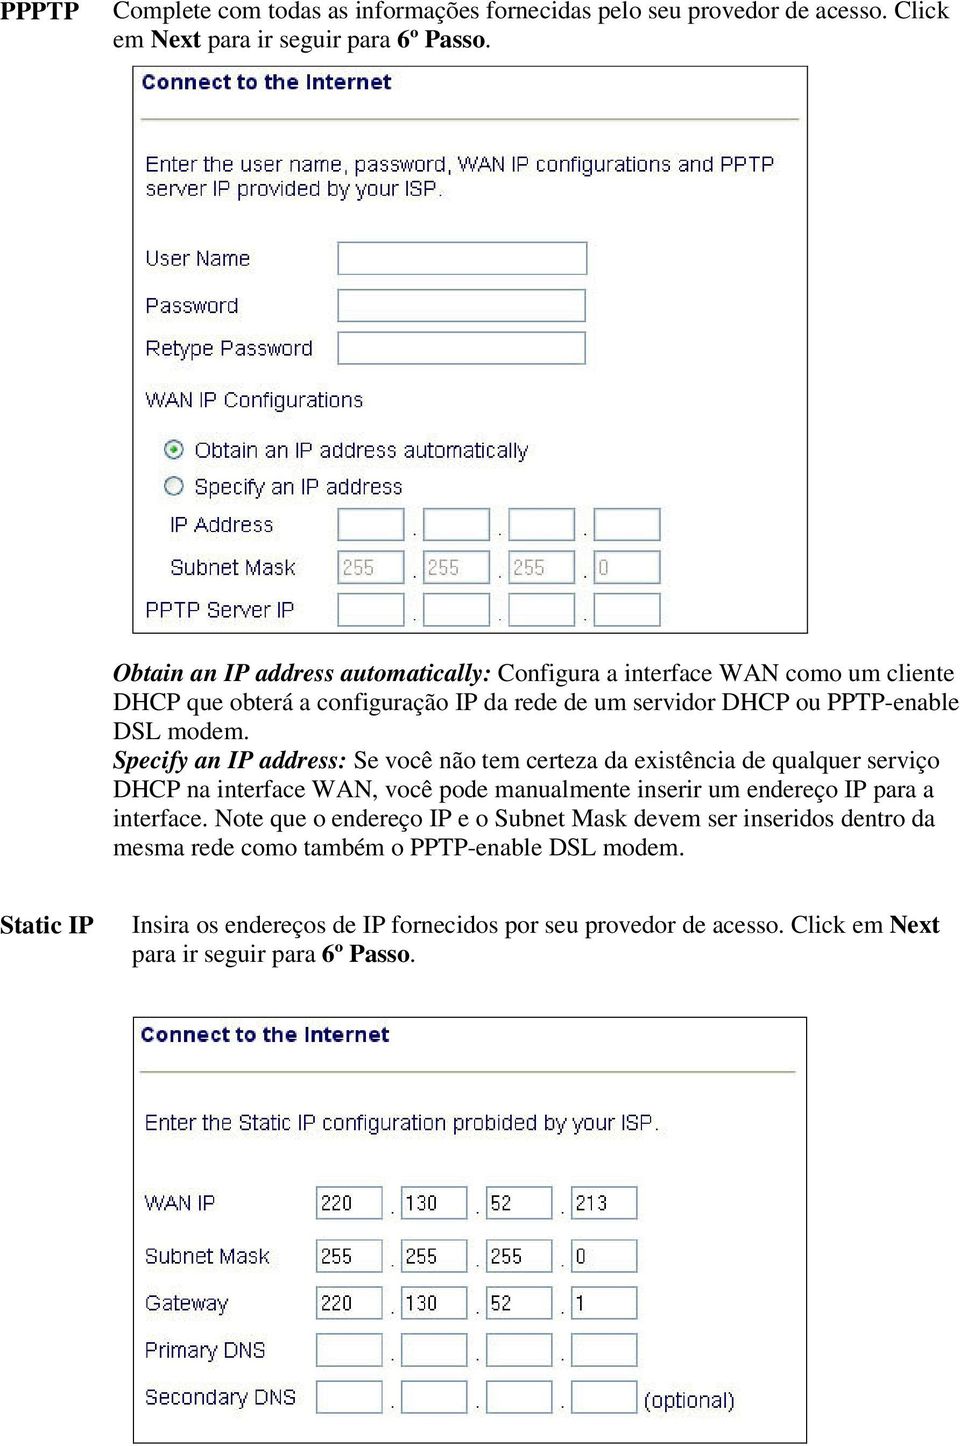 Specify an IP address: Se você não tem certeza da existência de qualquer serviço DHCP na interface WAN, você pode manualmente inserir um endereço IP para a interface.